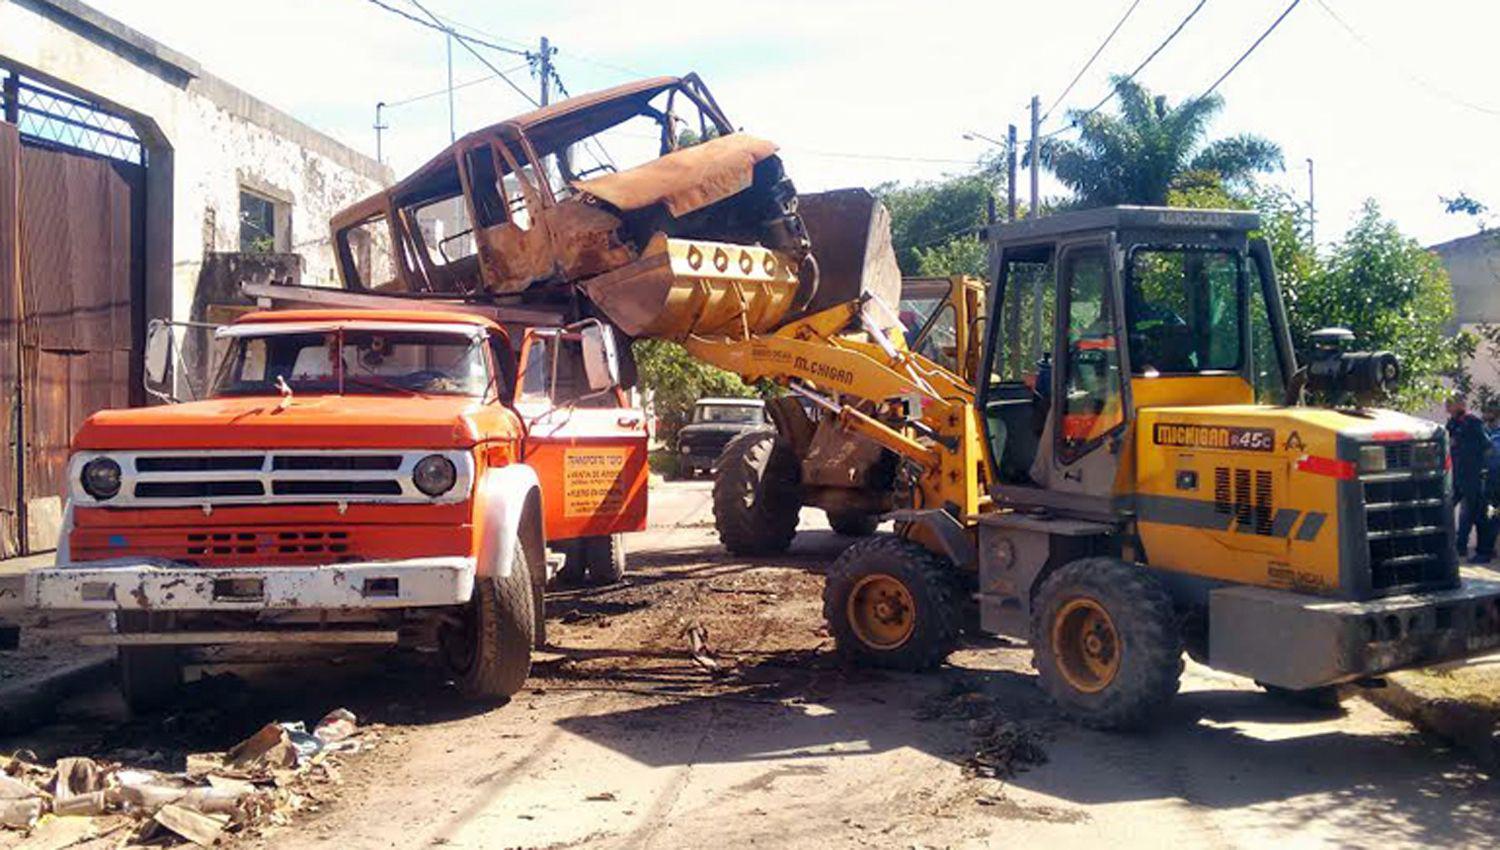 La comuna inició operativos para retirar vehículos abandonados en la vía p�blica